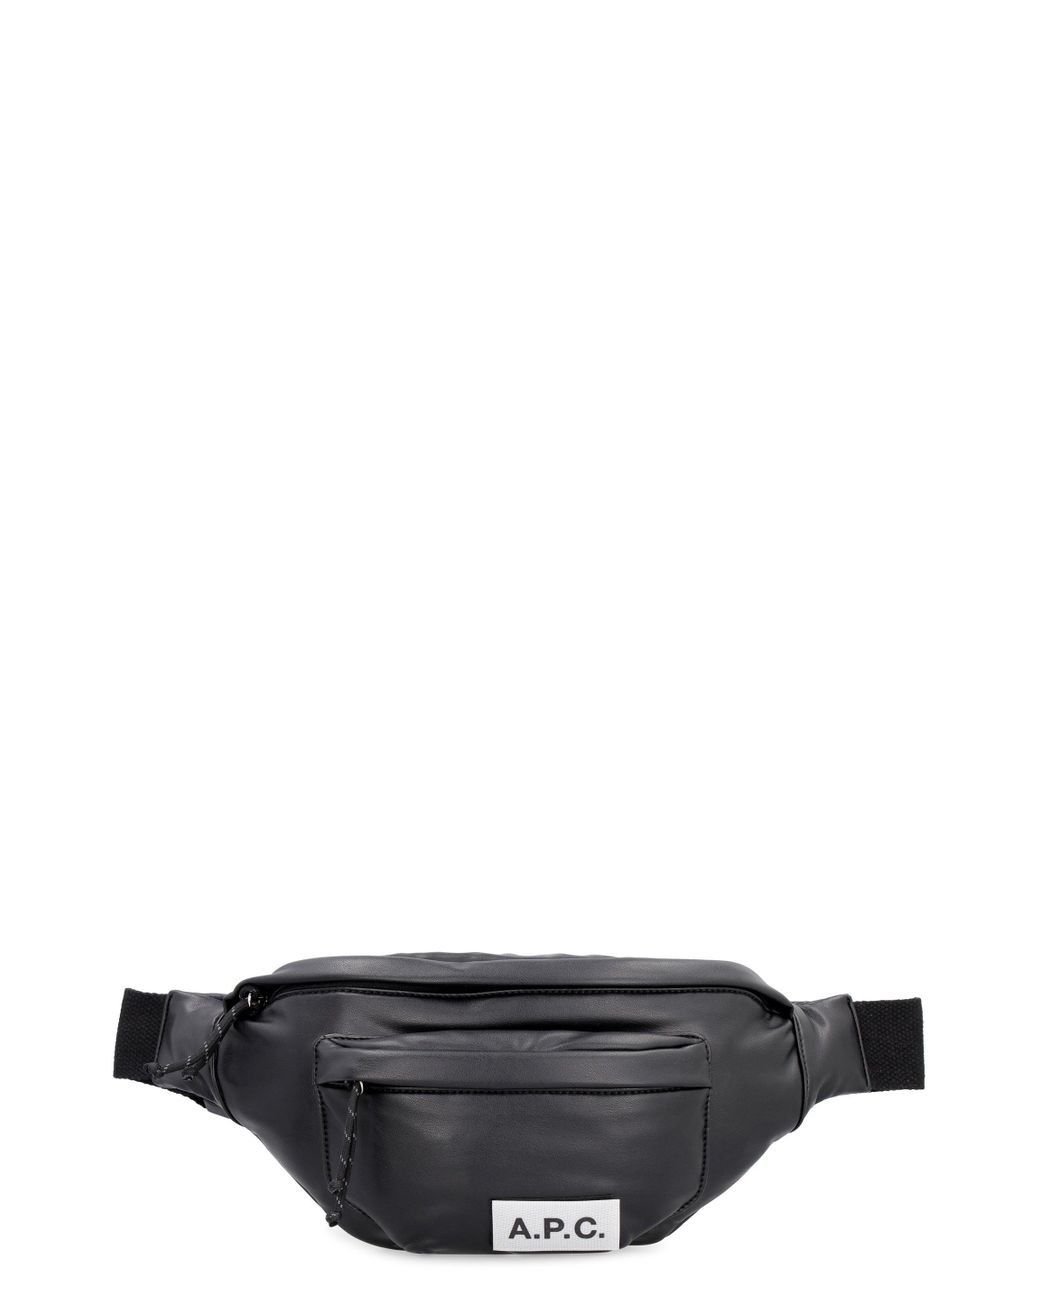 A.P.C. Banane Eco Leather Belt Bag in Black for Men | Lyst